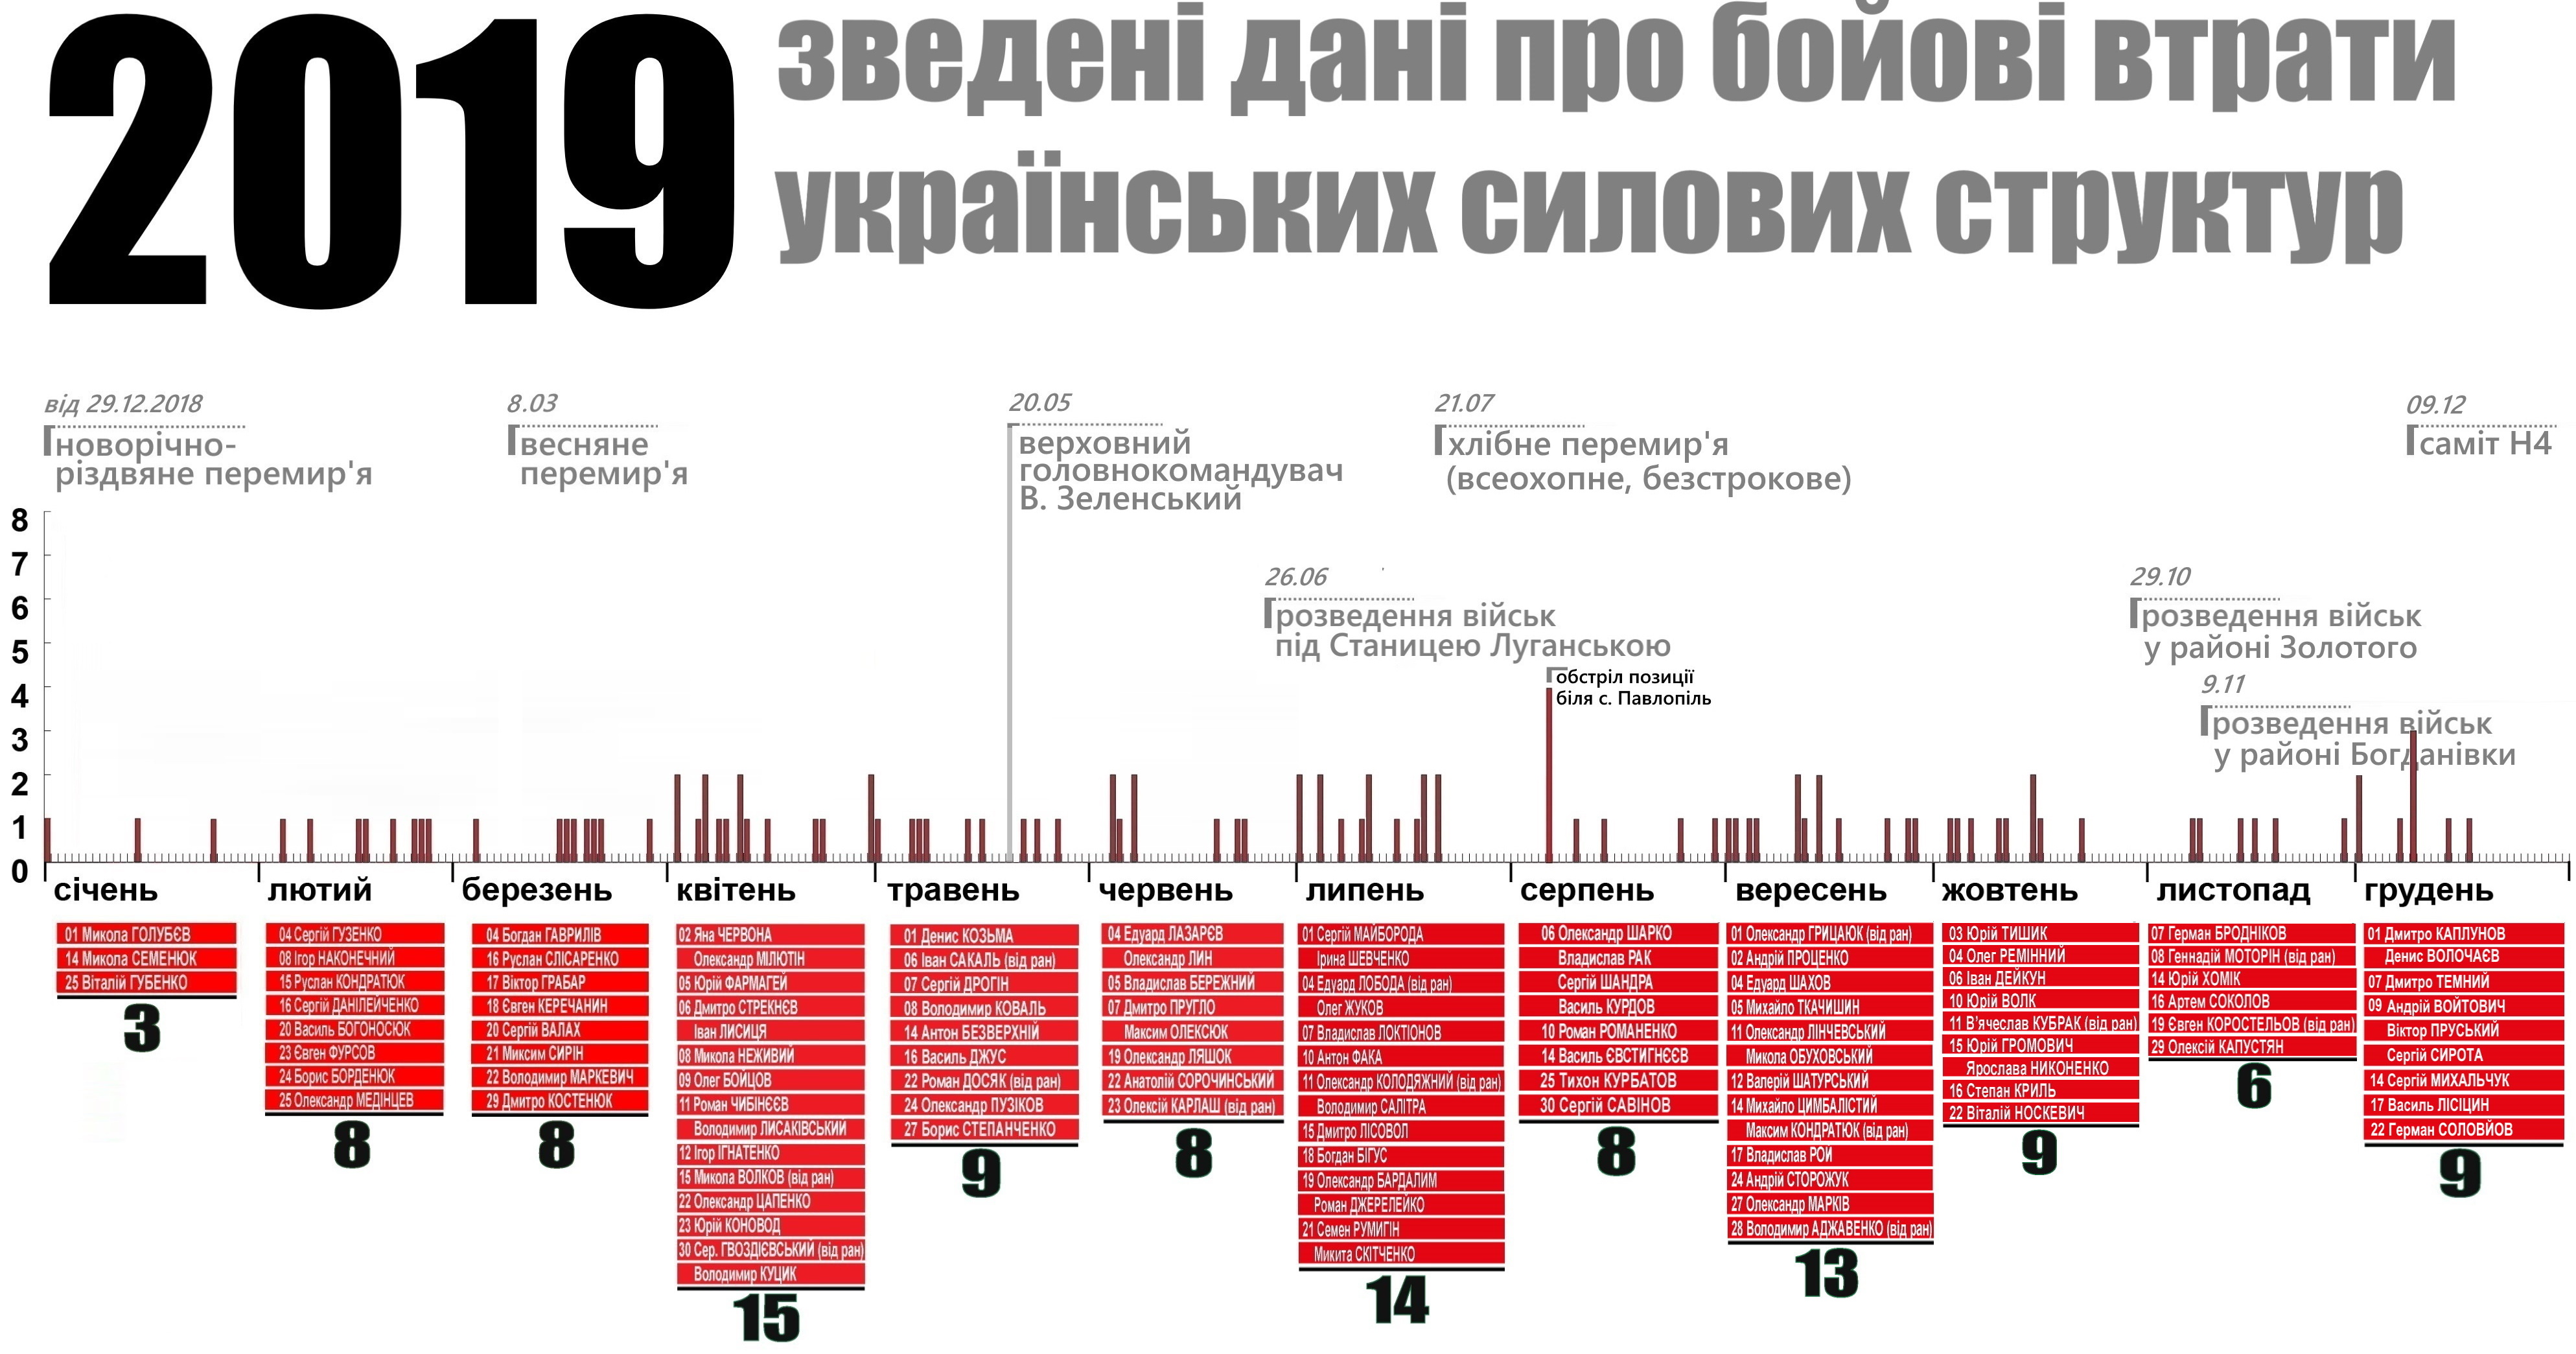 110 лиц. Все боевые потери на Донбассе в 2019 году – инфографика